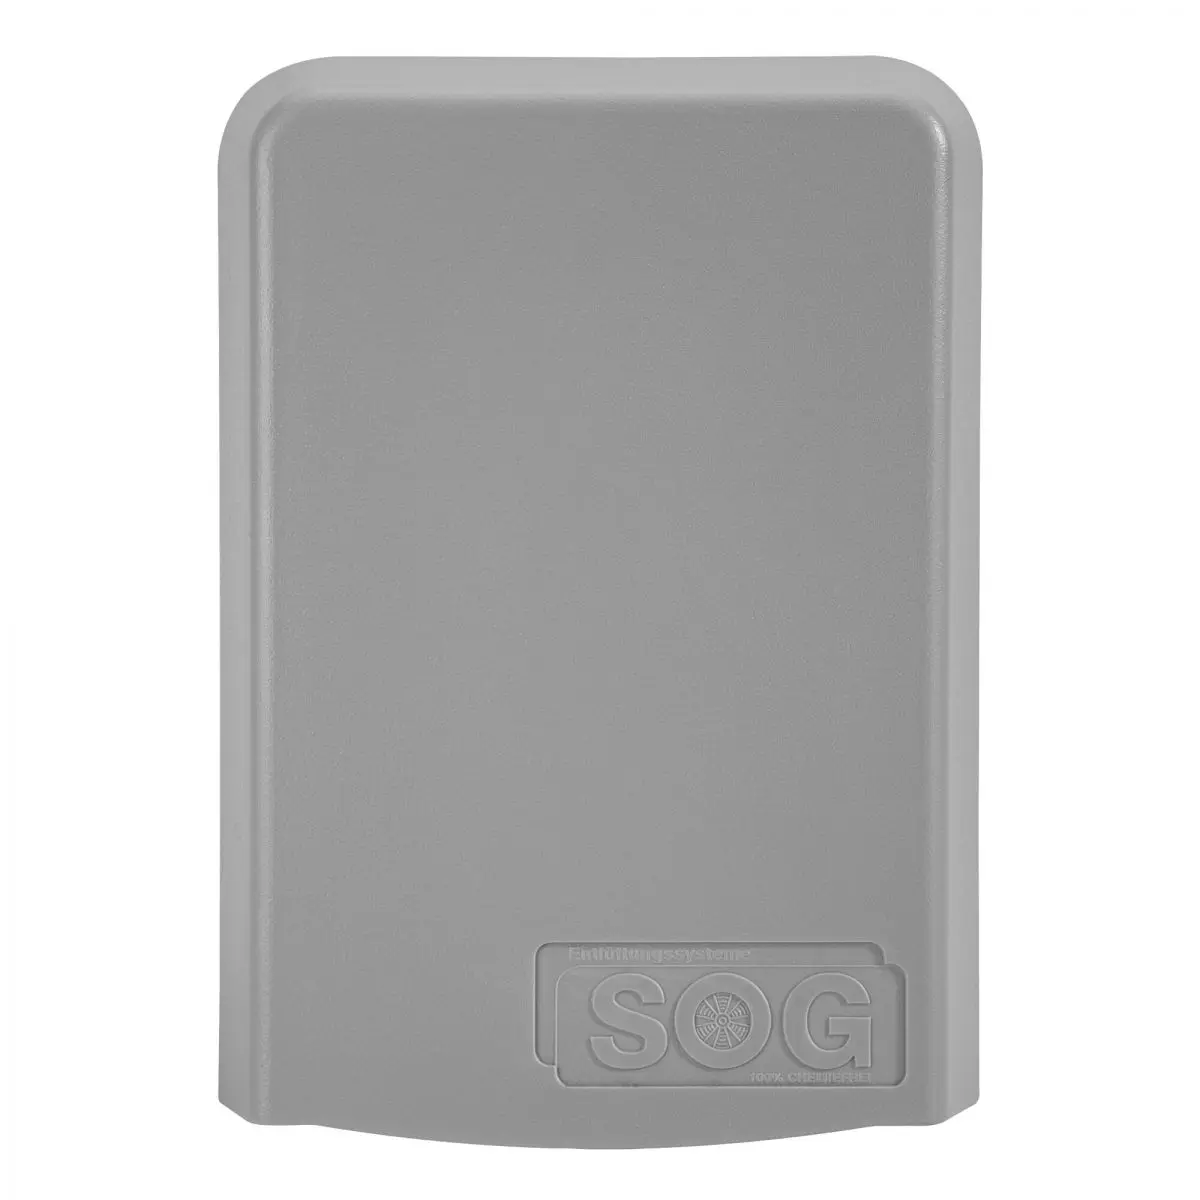 Kryt filtra - svetlosivý pre odvzdušnenie WC SOG